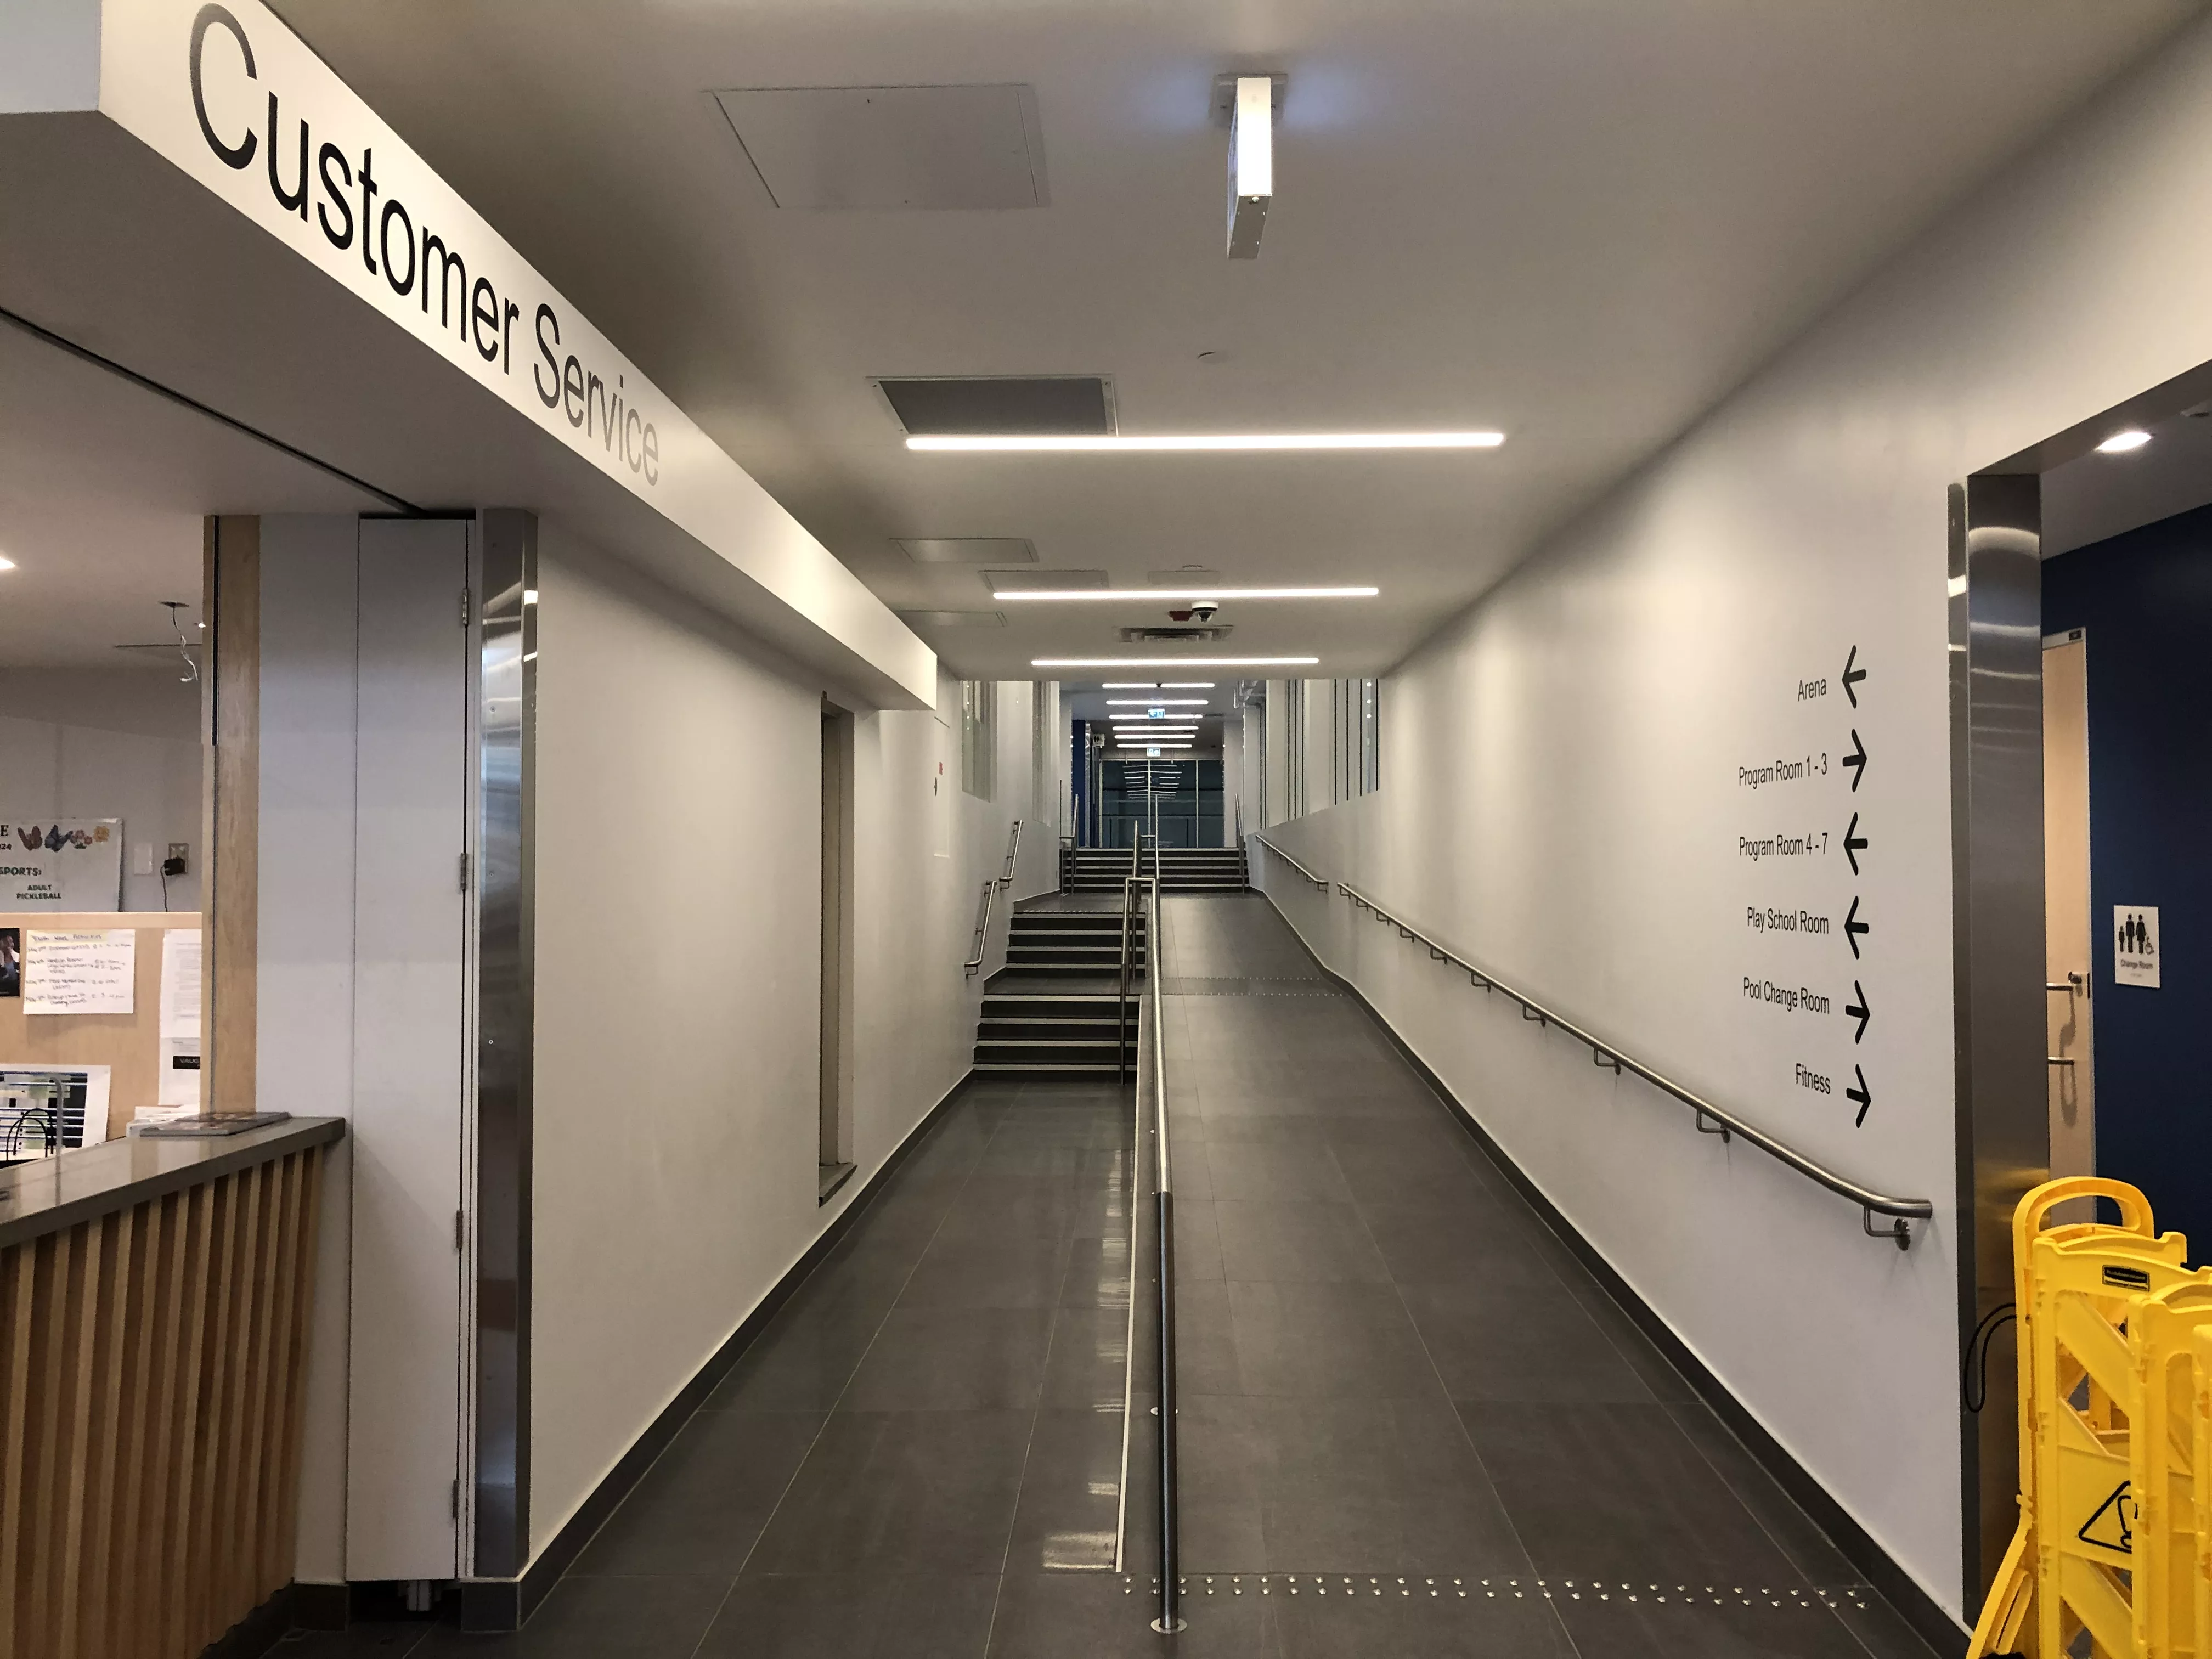 New main corridor